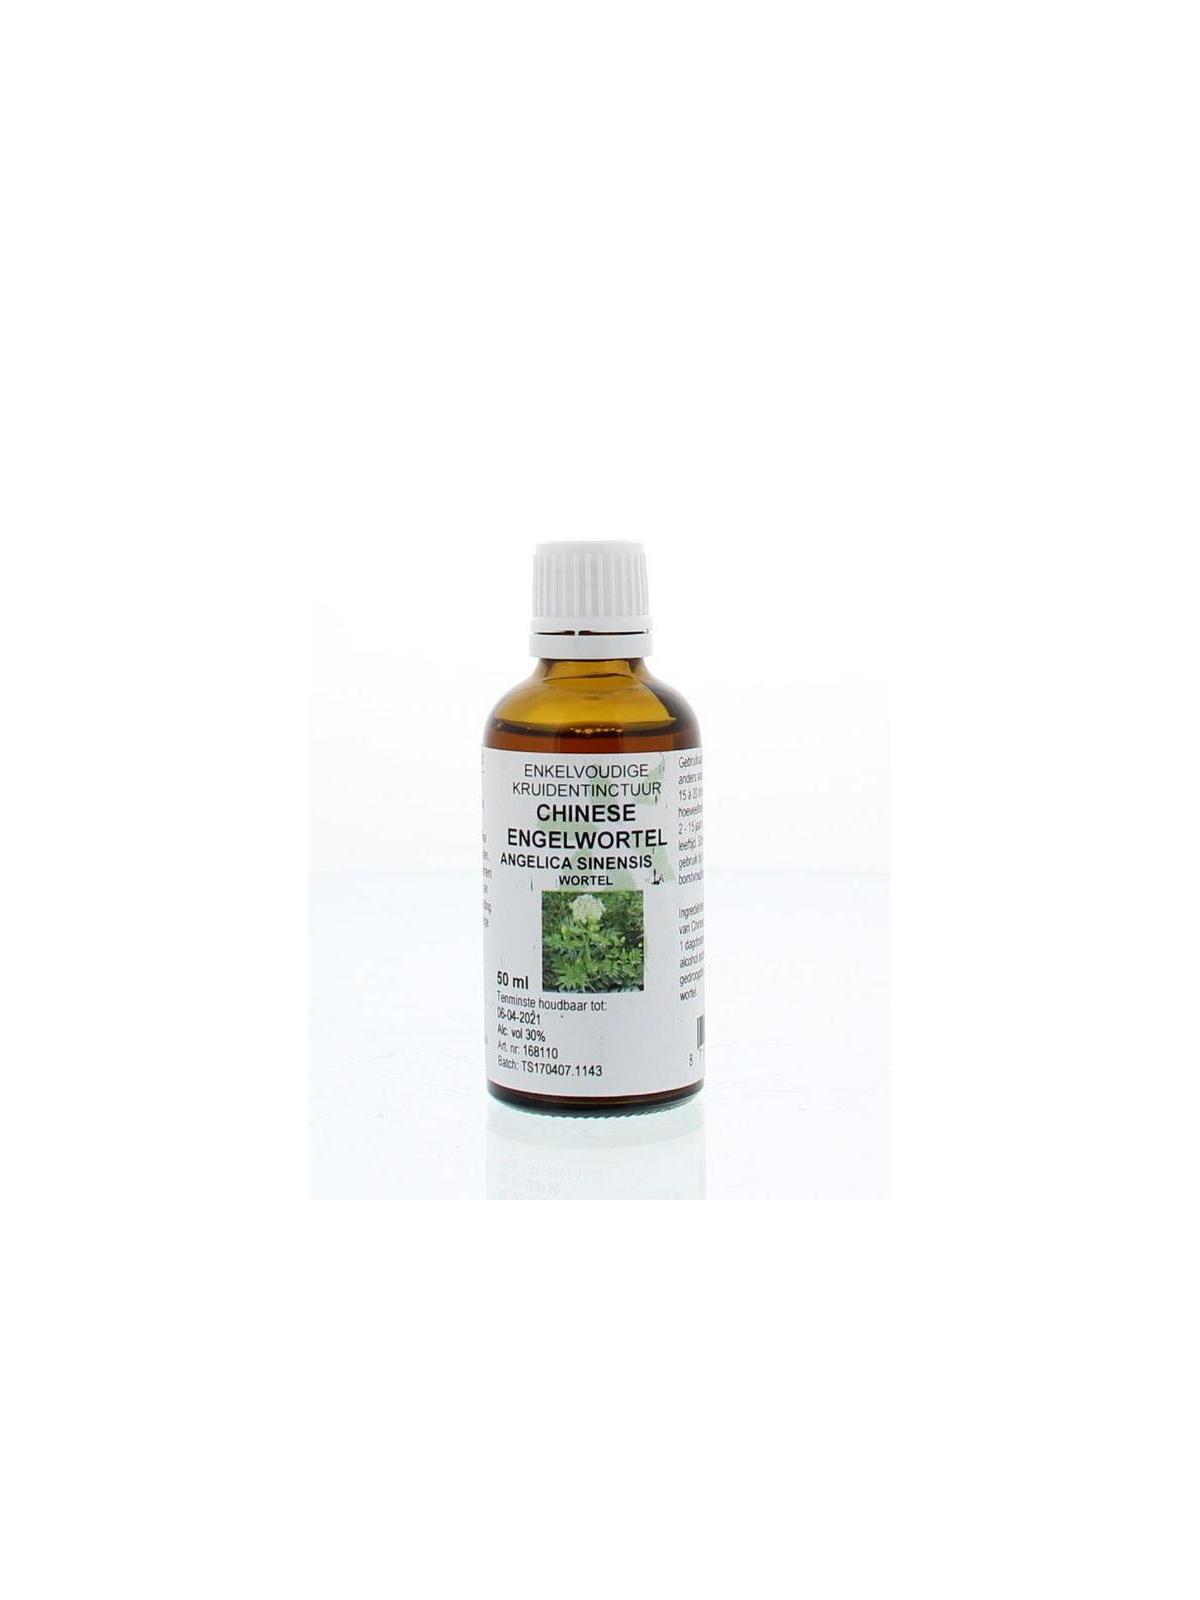 Angelica sinensis rad / chinese engelwortel tinct